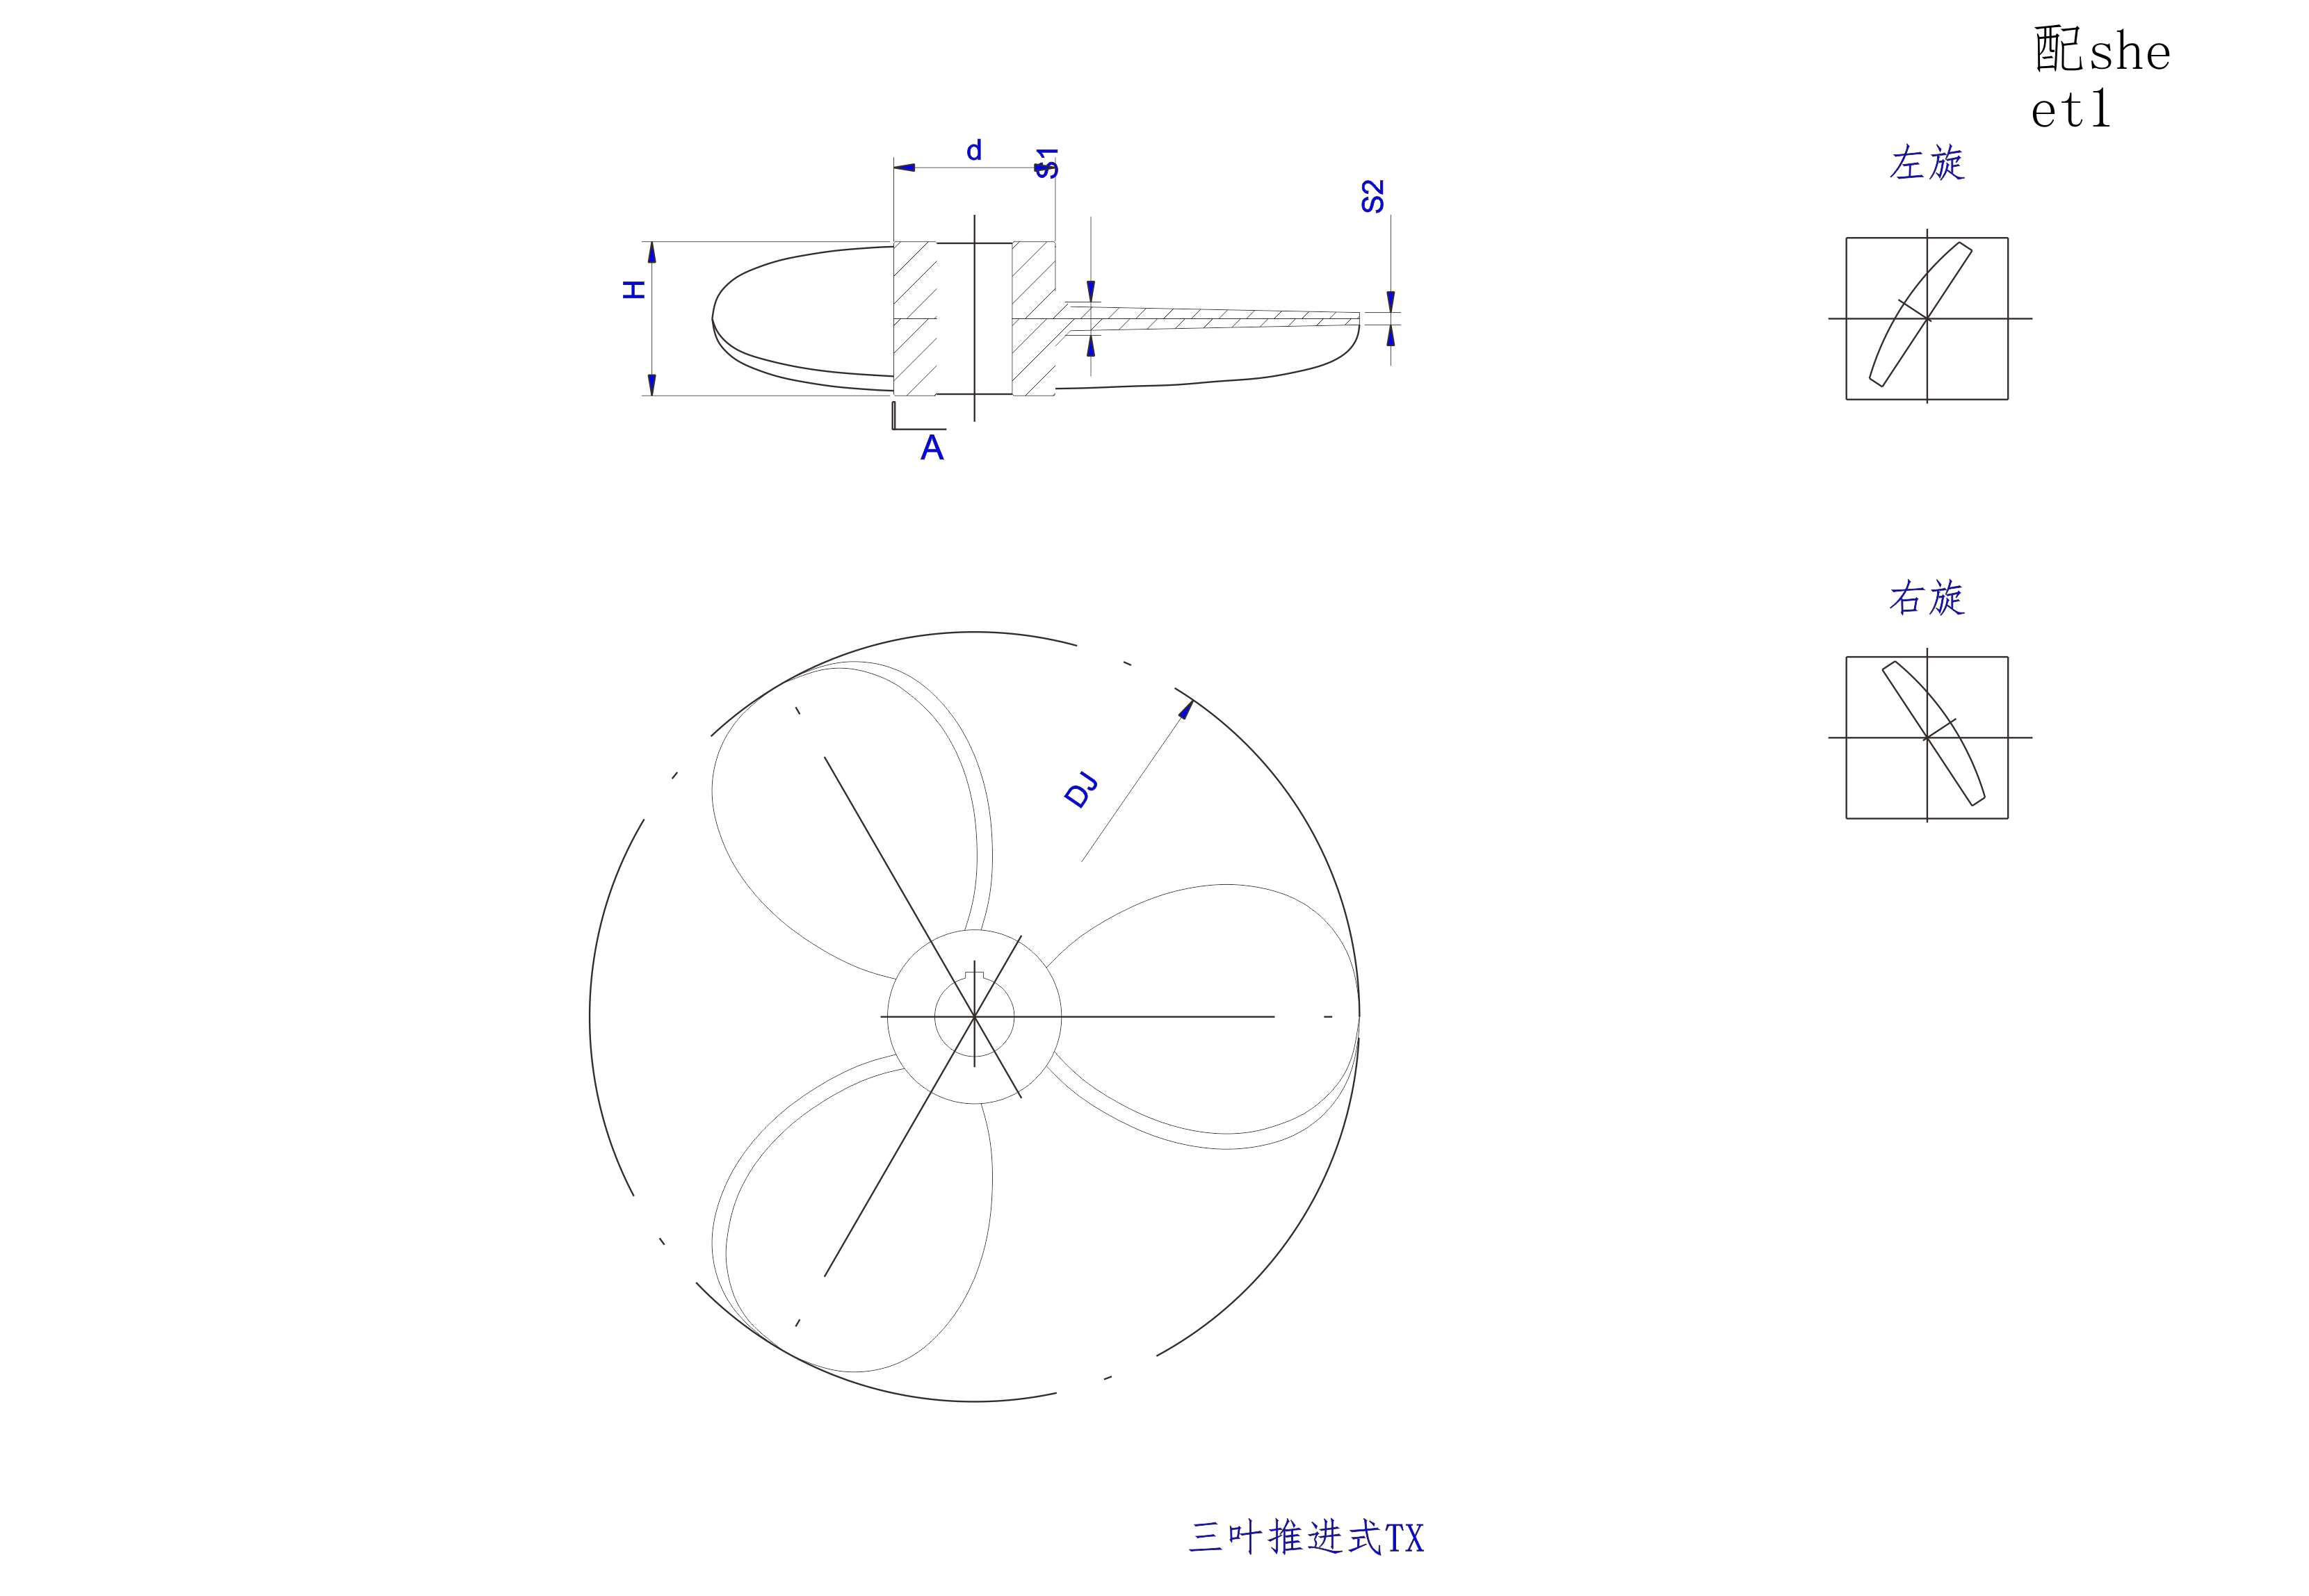   三葉推進式攪拌器設計圖